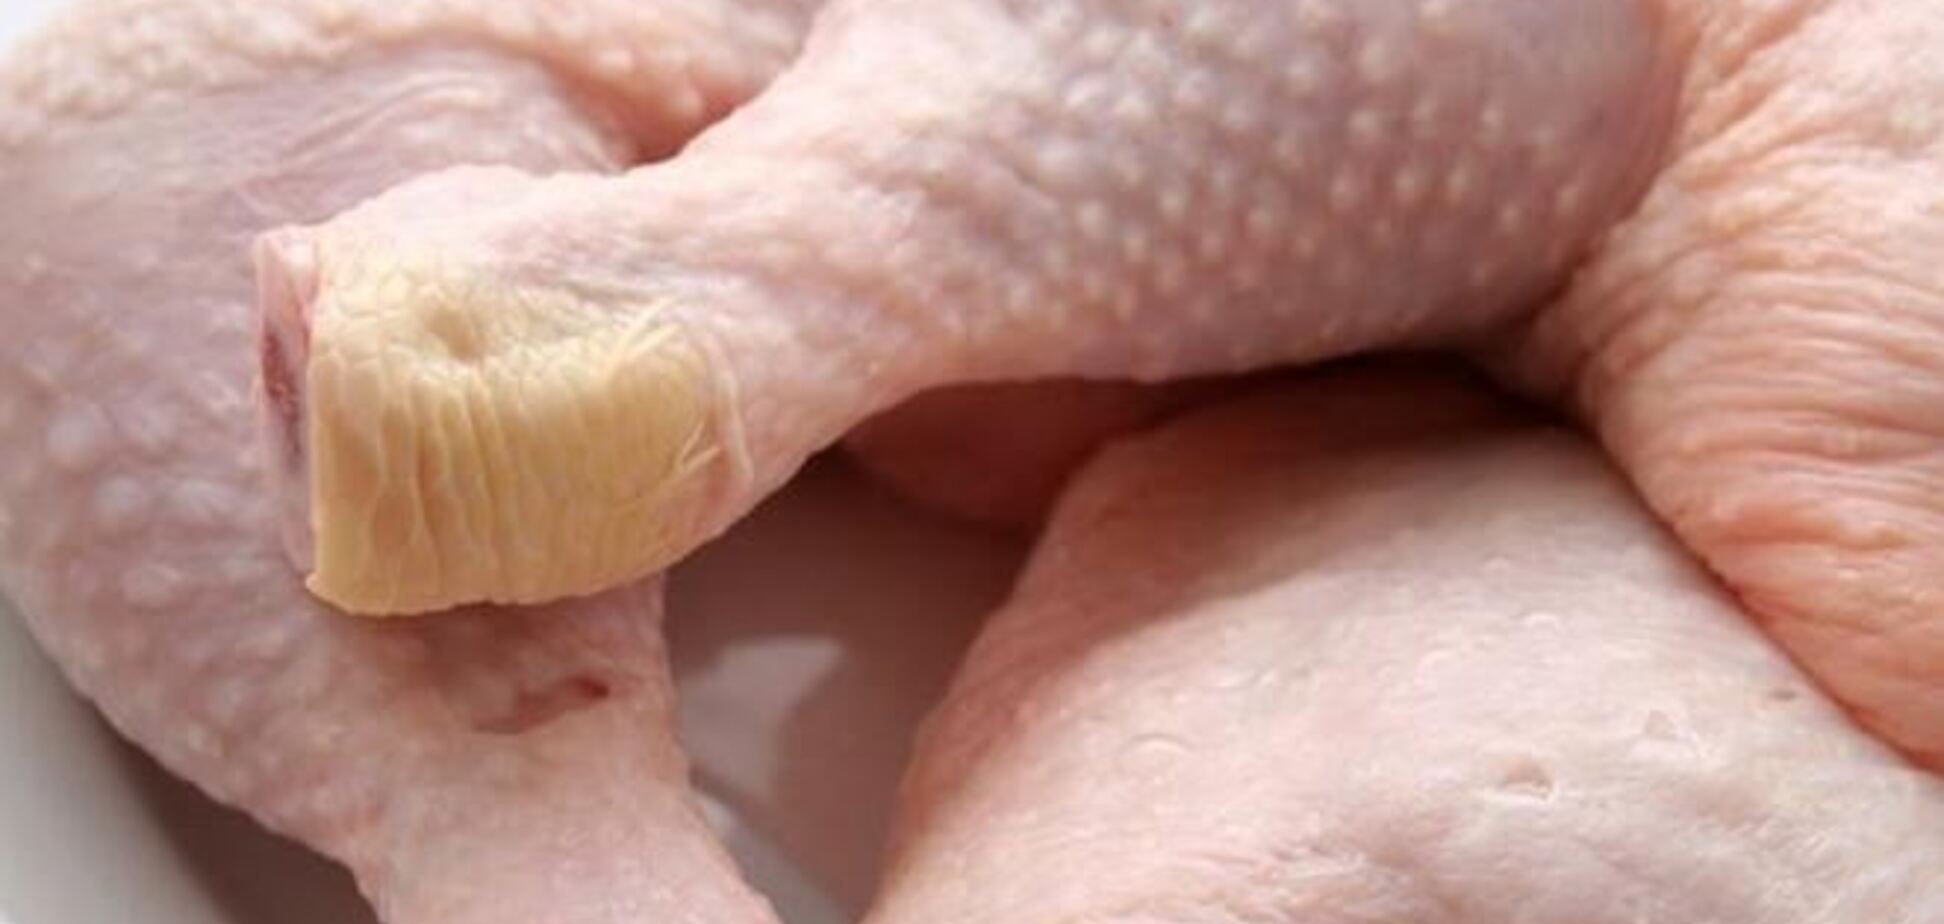 Украина начала экспорт курятины в ЕС